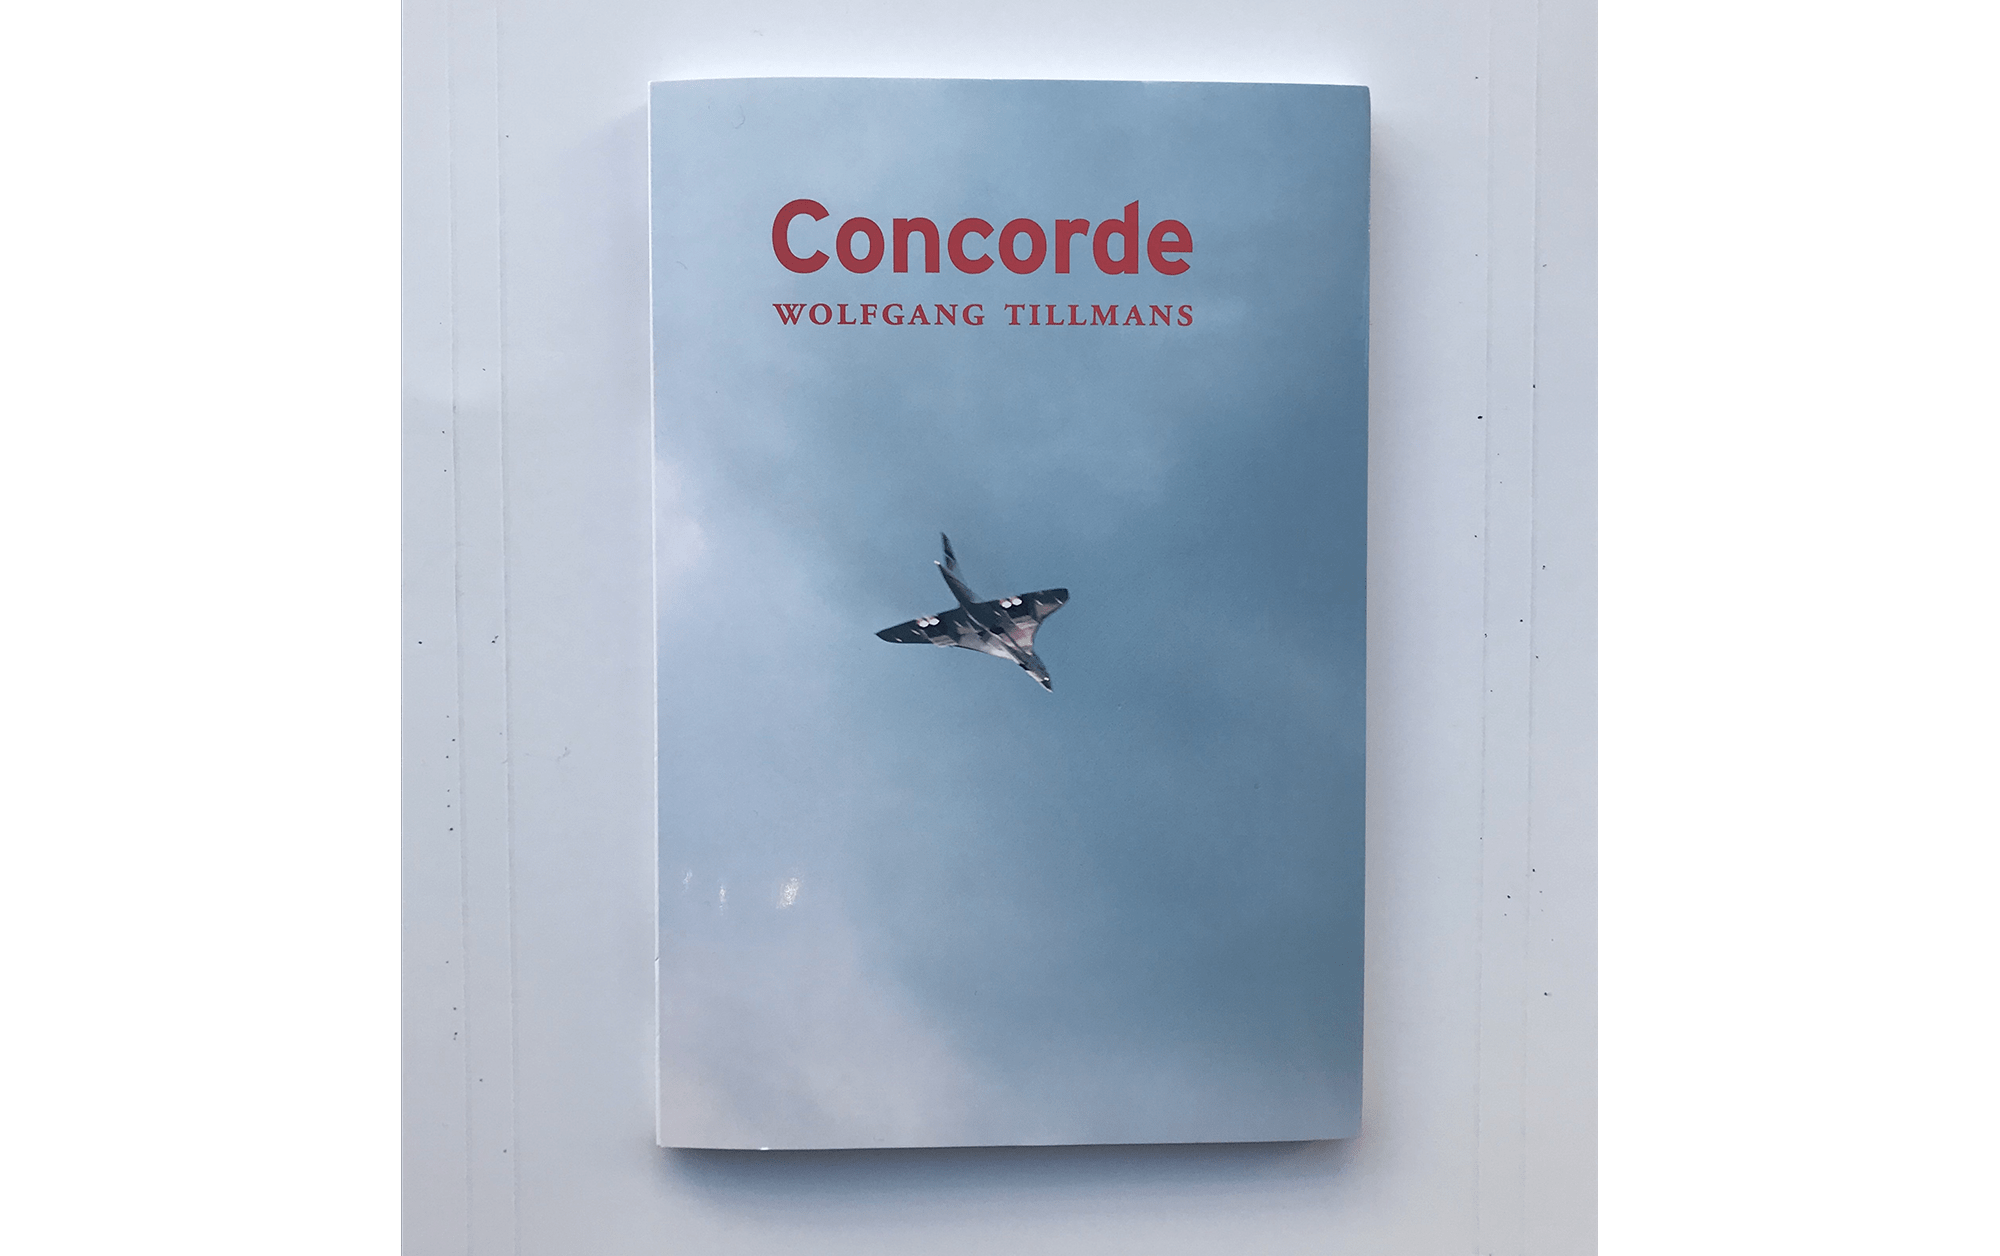 書店員がピックアップする12月のおすすめ写真集【POST編】 | ヴォルフガング・ティルマンス『Concorde』